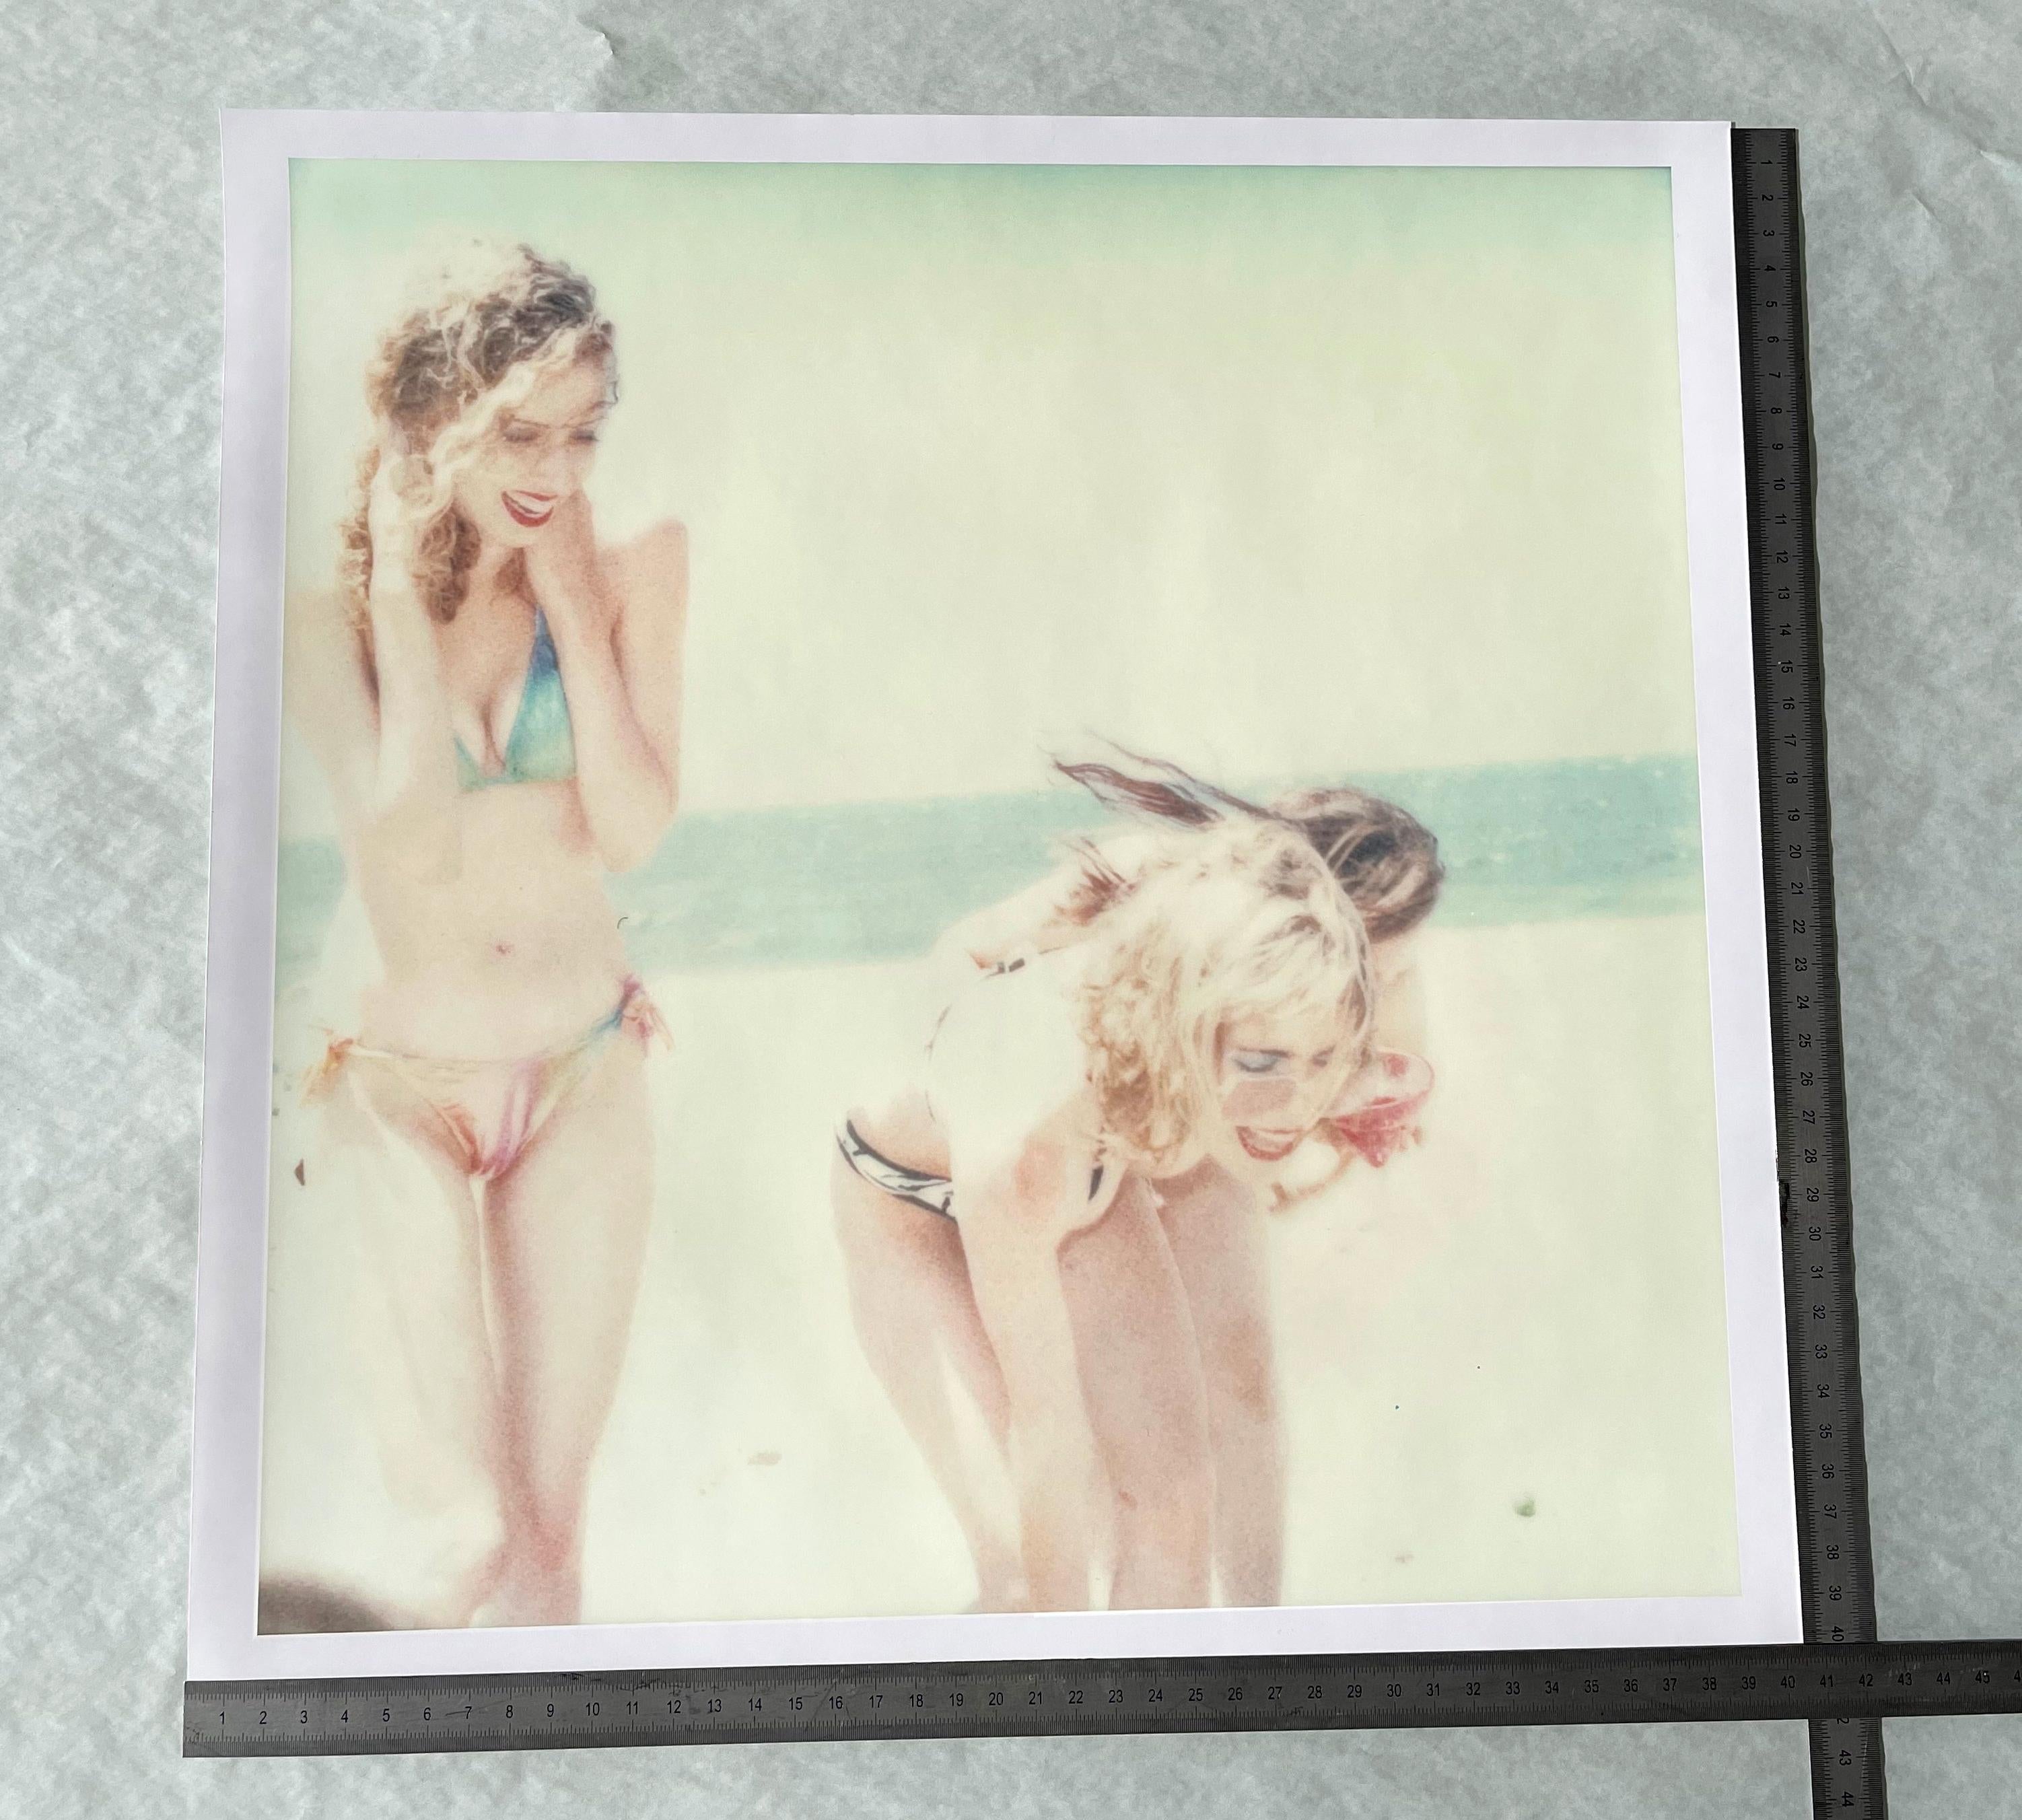 Boccia V (Strandschießen) - 2005

38x37cm, 
Auflage von 10 Stück
Archiv-C-Print, basierend auf dem Polaroid.
Label für Zertifikat und Unterschrift.
Künstler-Inventar Nr. 1467_5. 
Nicht montiert.

mit Camille Waldorf und Radha